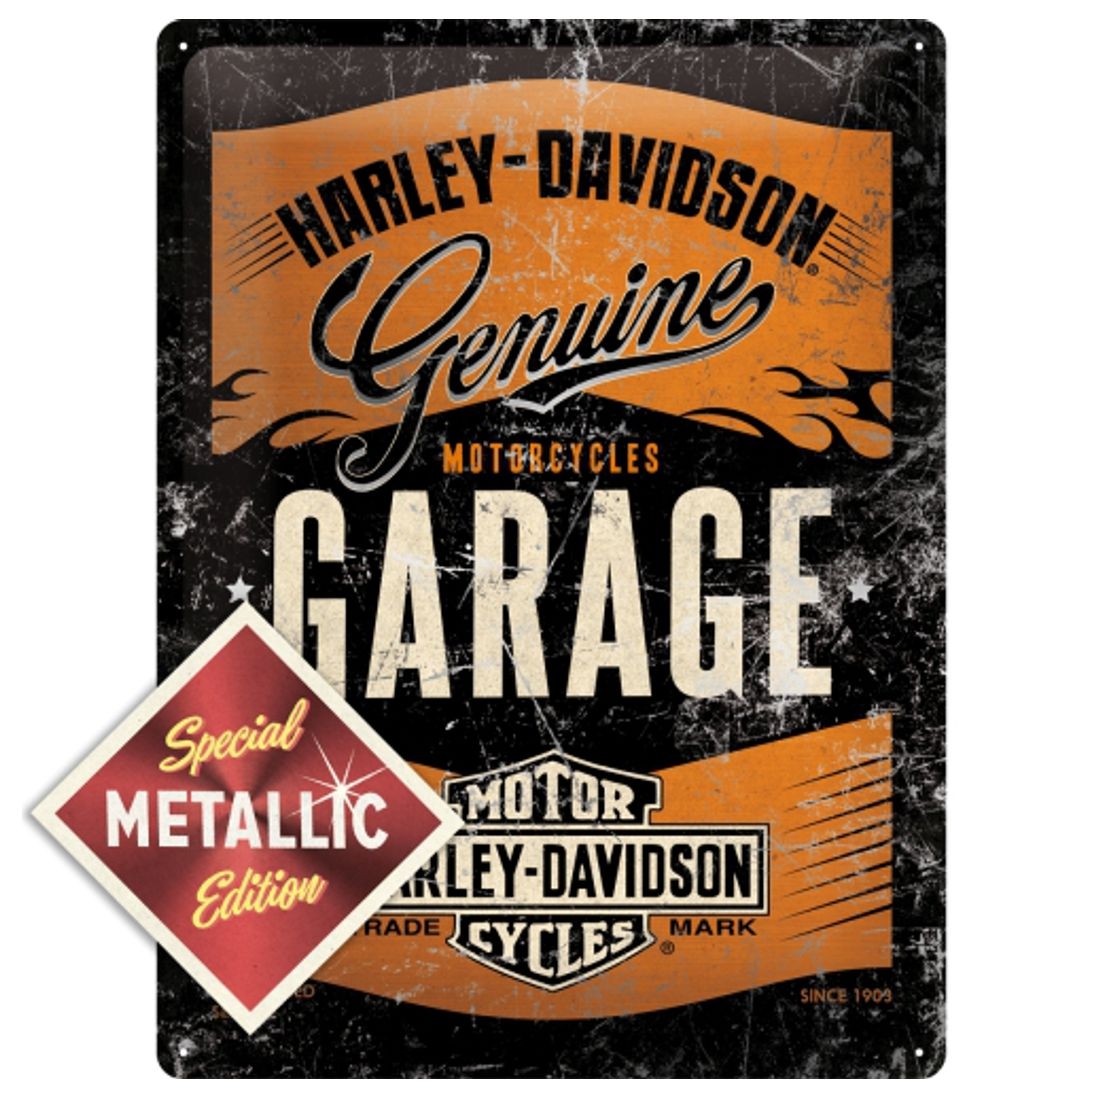 Blechschild - Harley Davidson - Garage - Special Metallic Edition